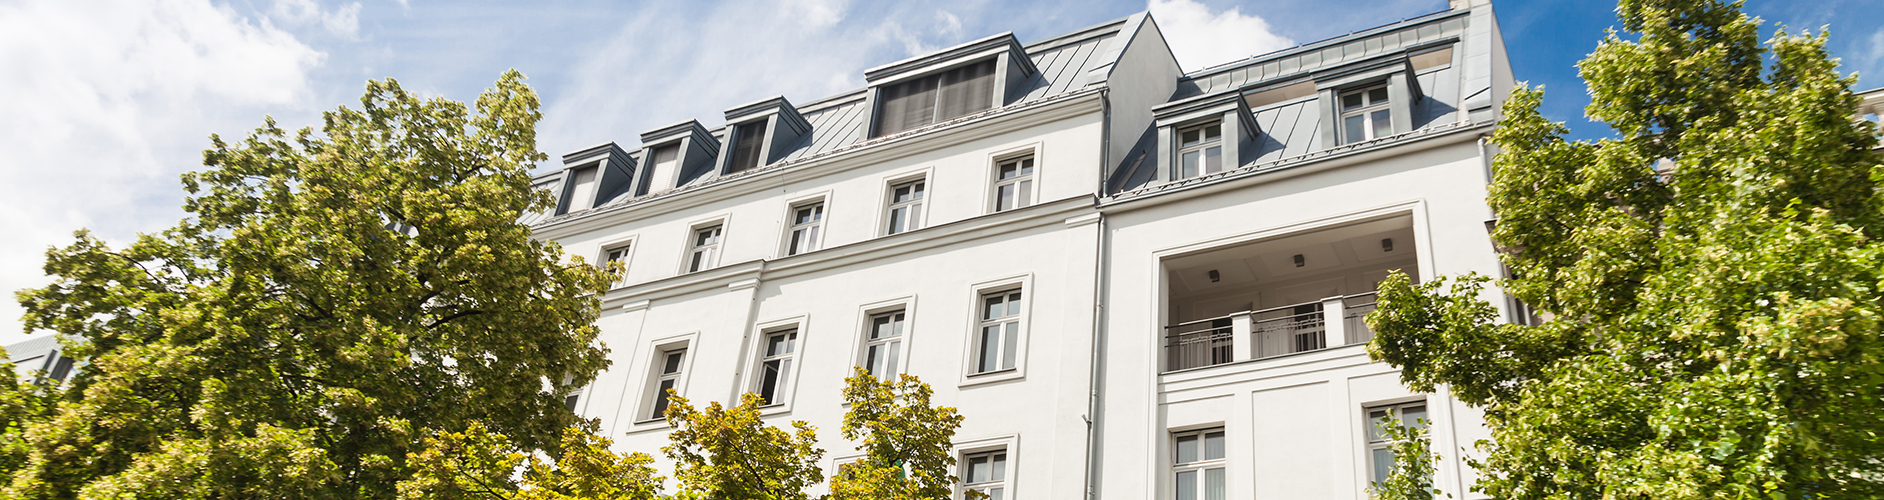 Wir sind Ihr Partner für eine professionelle Fassadenrenovierung in Hallstadt, Bamberg und Bischberg.